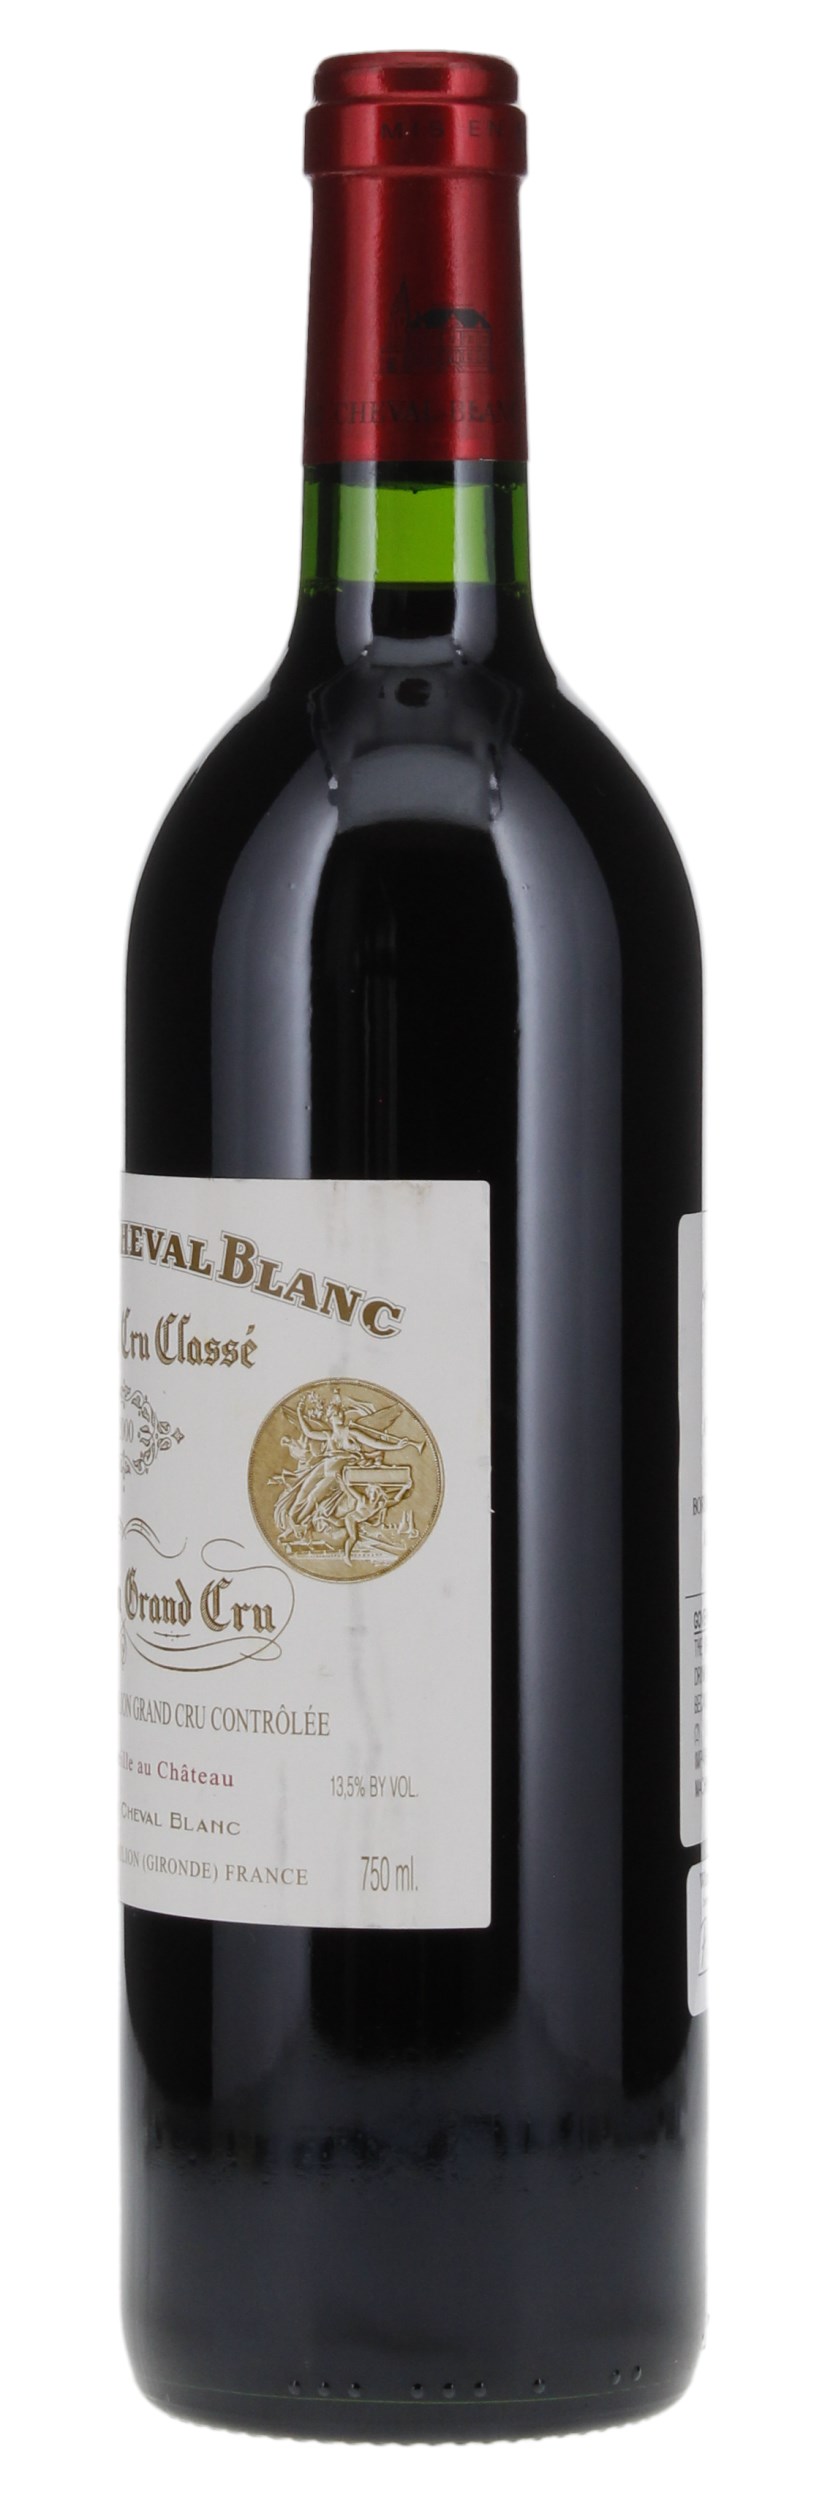 2000 Château Cheval-Blanc, 750ml